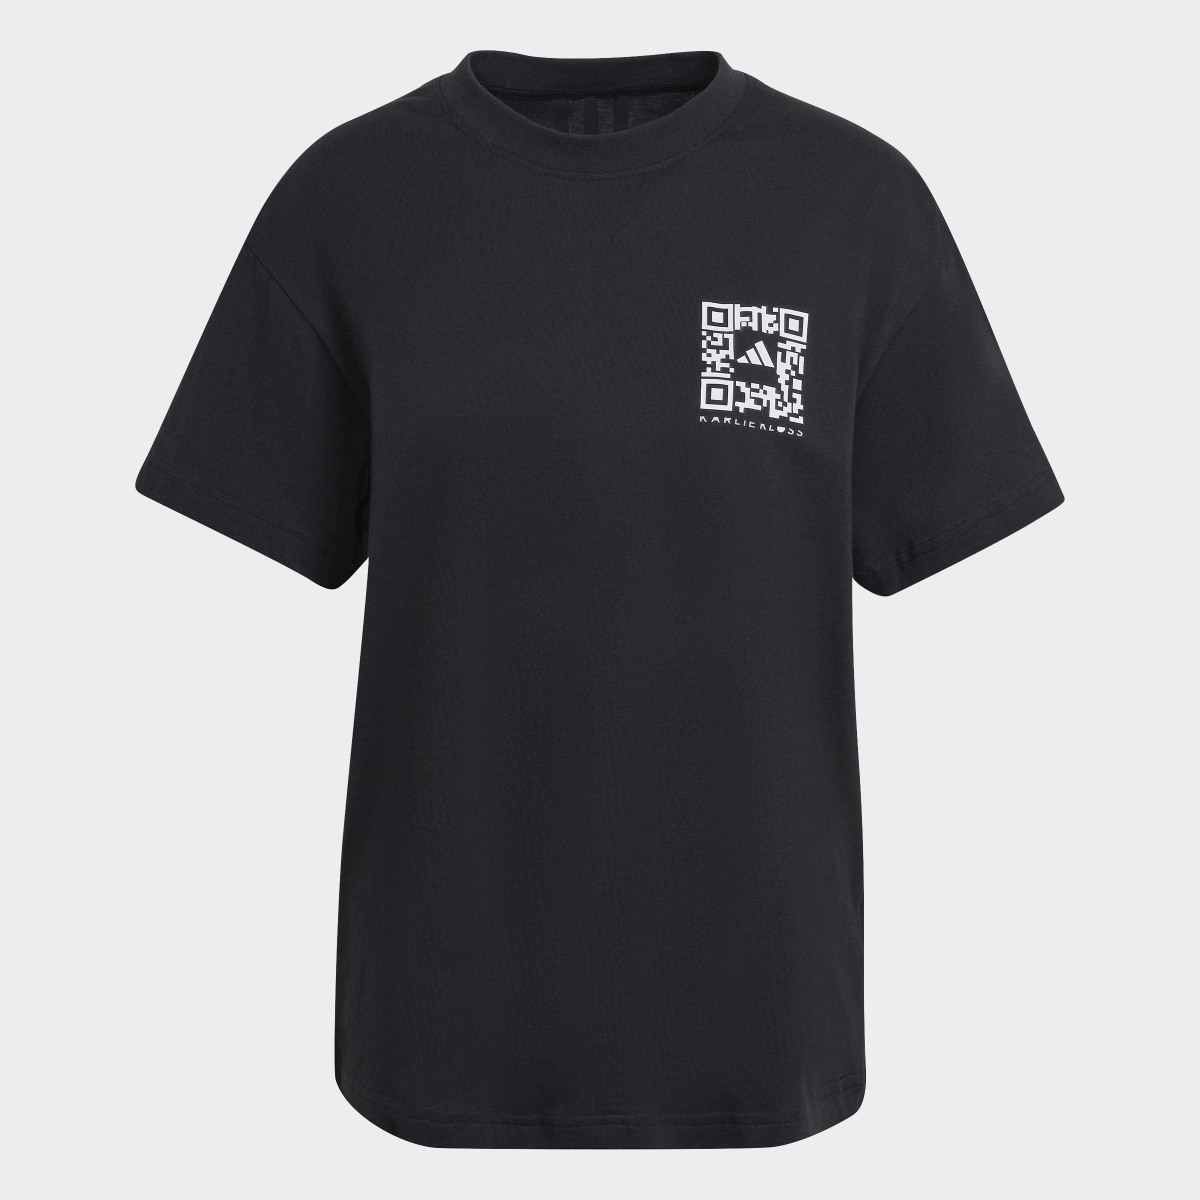 Adidas x Karlie Kloss Crop T-Shirt. 5